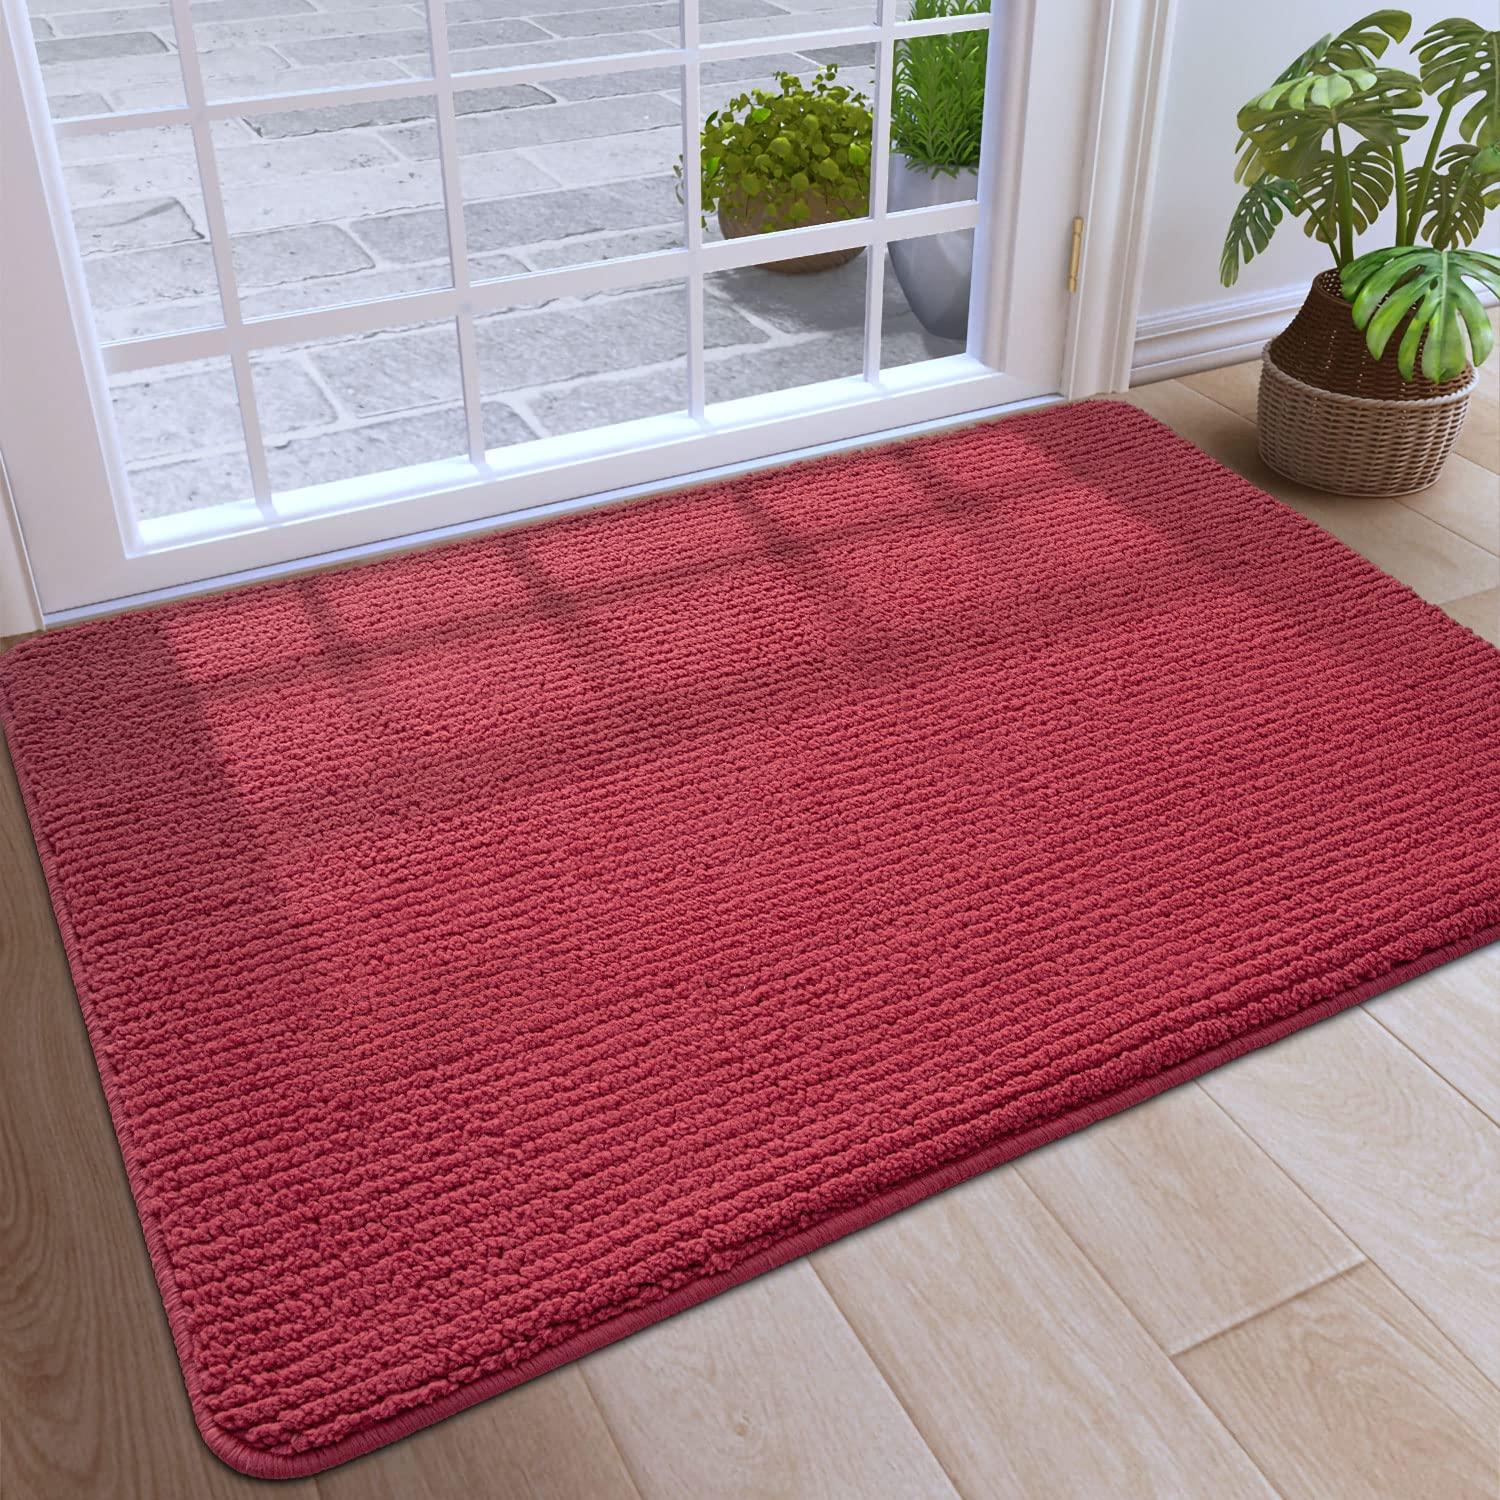 DEXI Door Mats Indoor 90 x 150 cm, Non-Slip Front Door Mats for Entrance, Super Absorbent Doormat Inside, Washable Soft Floor Mat Carpet- Red